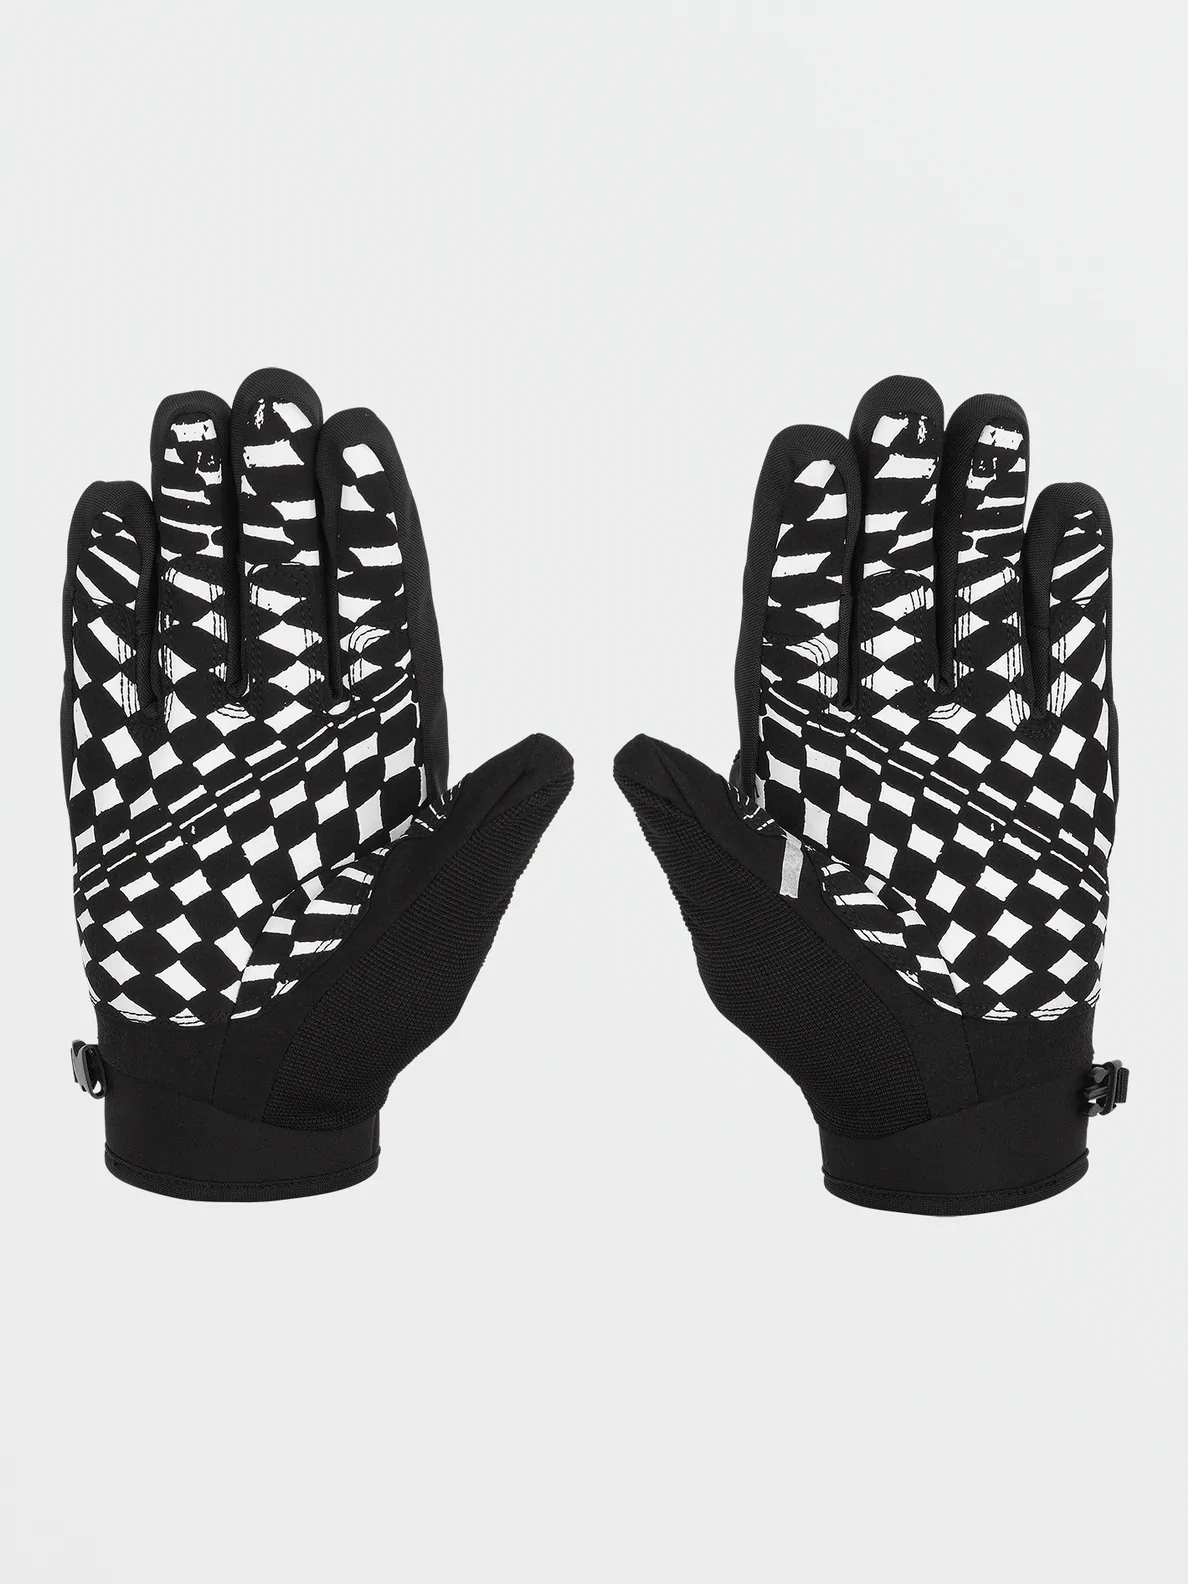 Volcom Service Gore-Tex handschoenen black